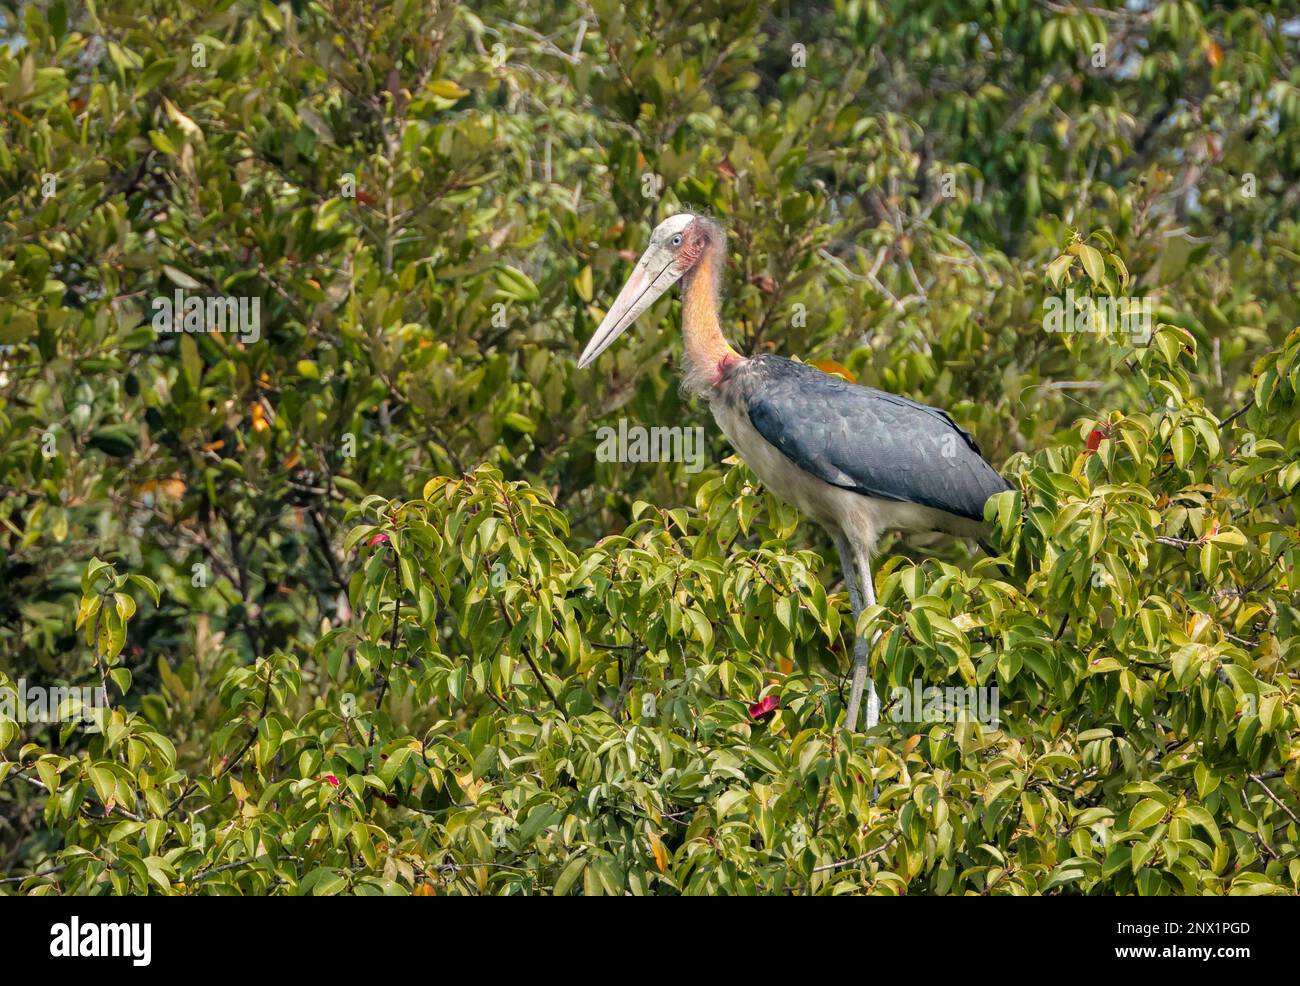 El ayudante menor es un ave vadeante grande en la familia de cigüeñas Ciconiidae. Esta foto fue tomada del Parque Nacional de Sundarbans, Bangladesh. Foto de stock